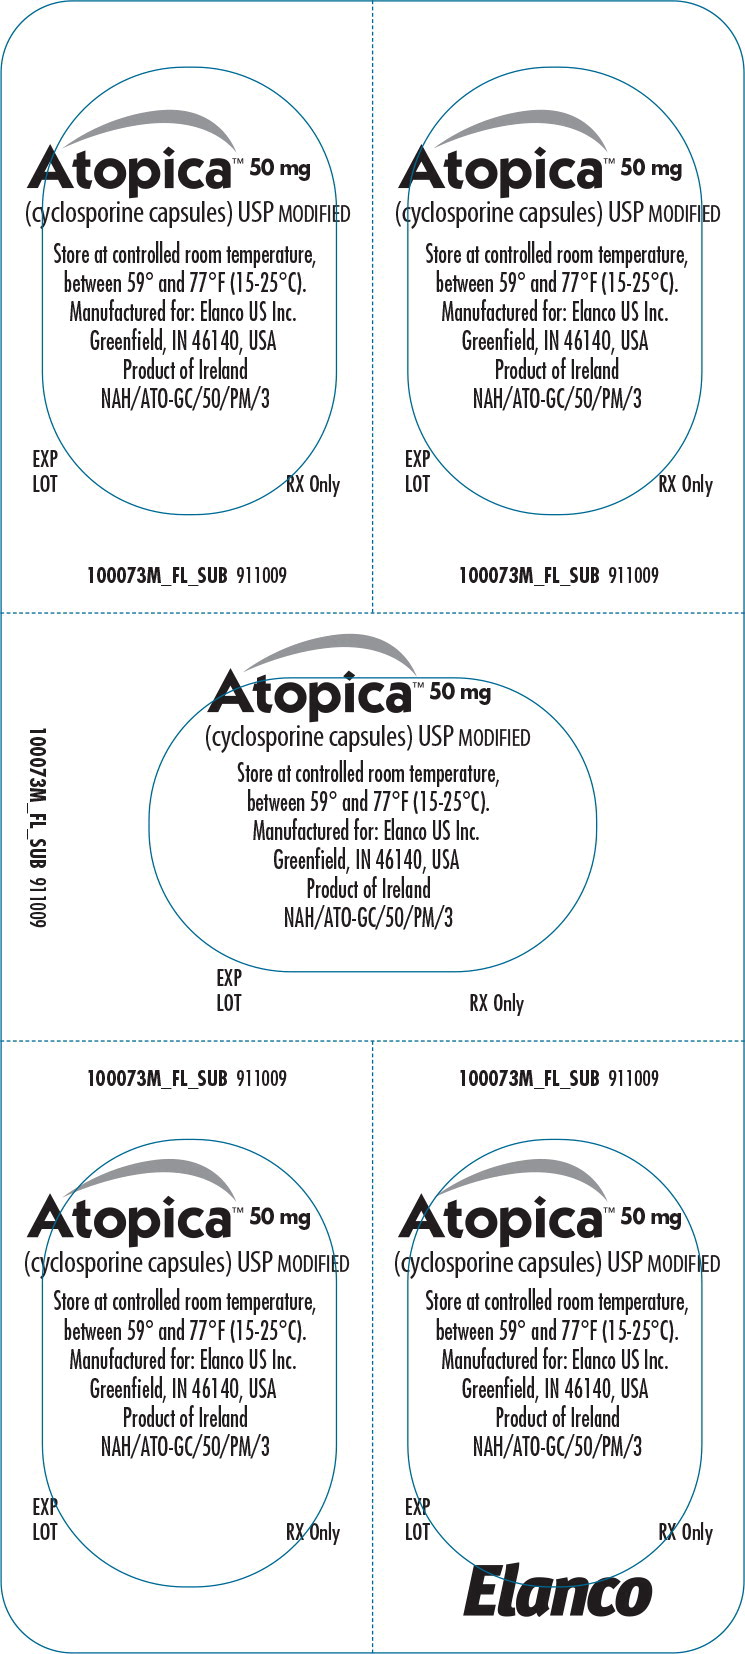 Principal Display Panel - Atopica 50mg Blister Label - ato02 0002 07